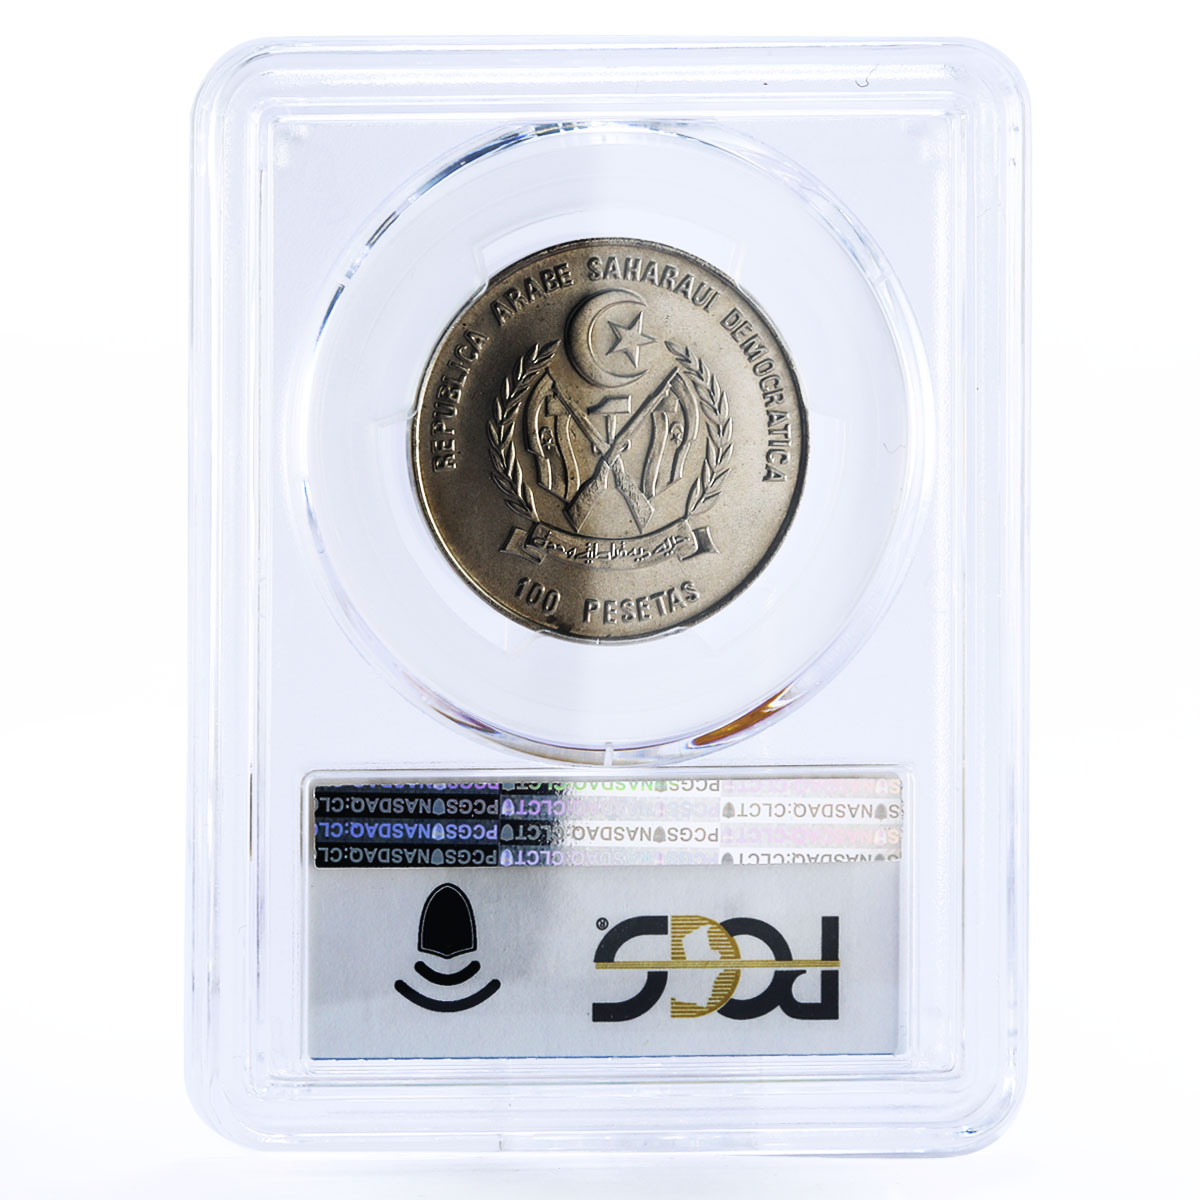 Sahrawi 100 pesetas Ancient Ship Clipper Arab Man MS69 PCGS CuNi coin 1990